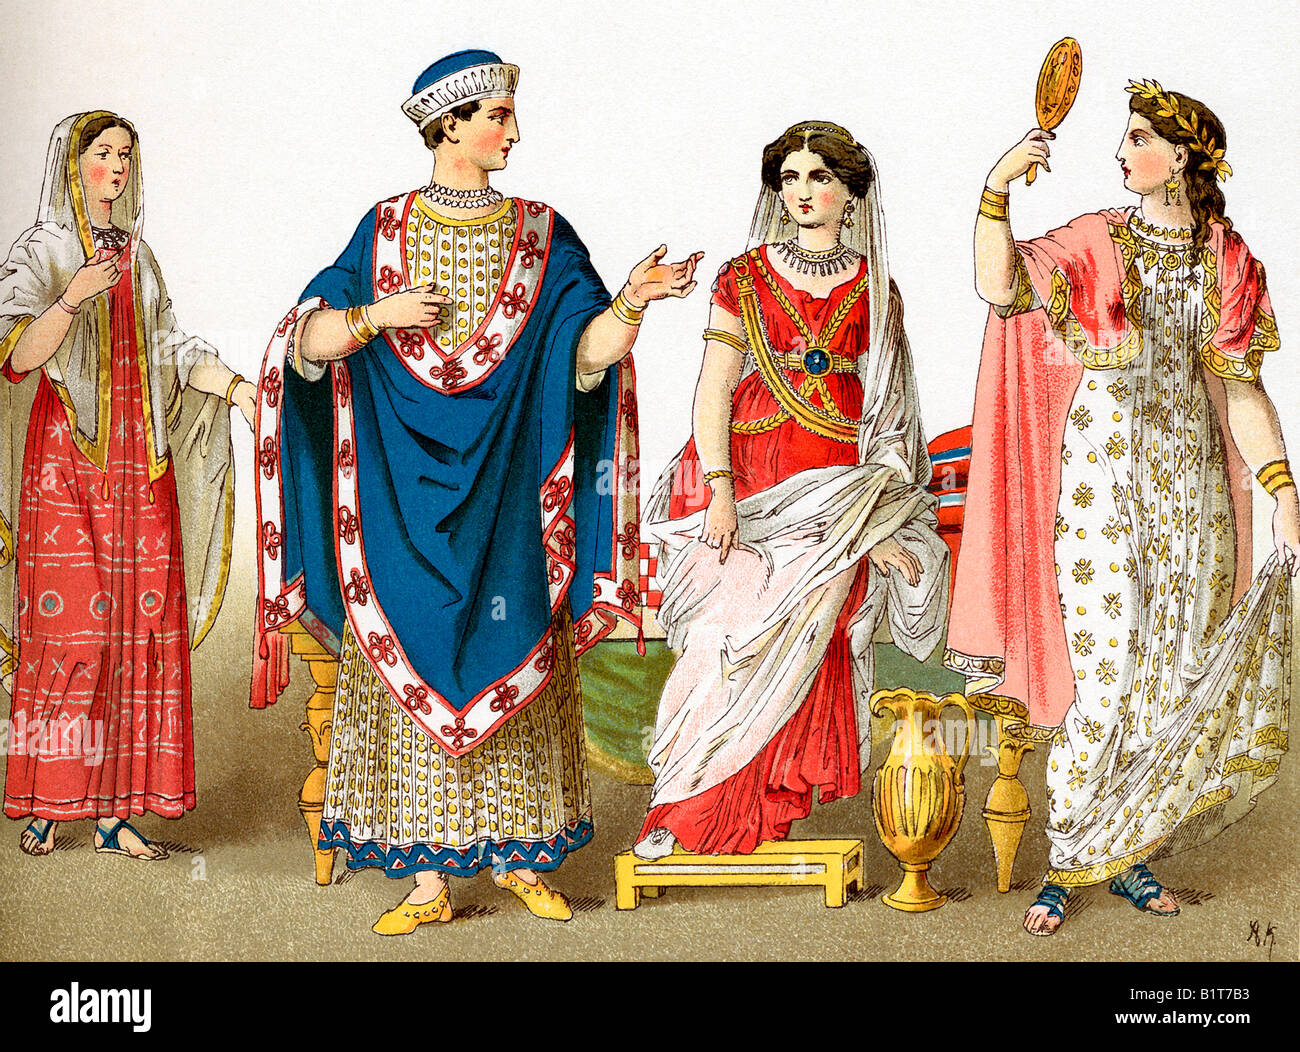 Las mujeres etruscas y noble Foto de stock